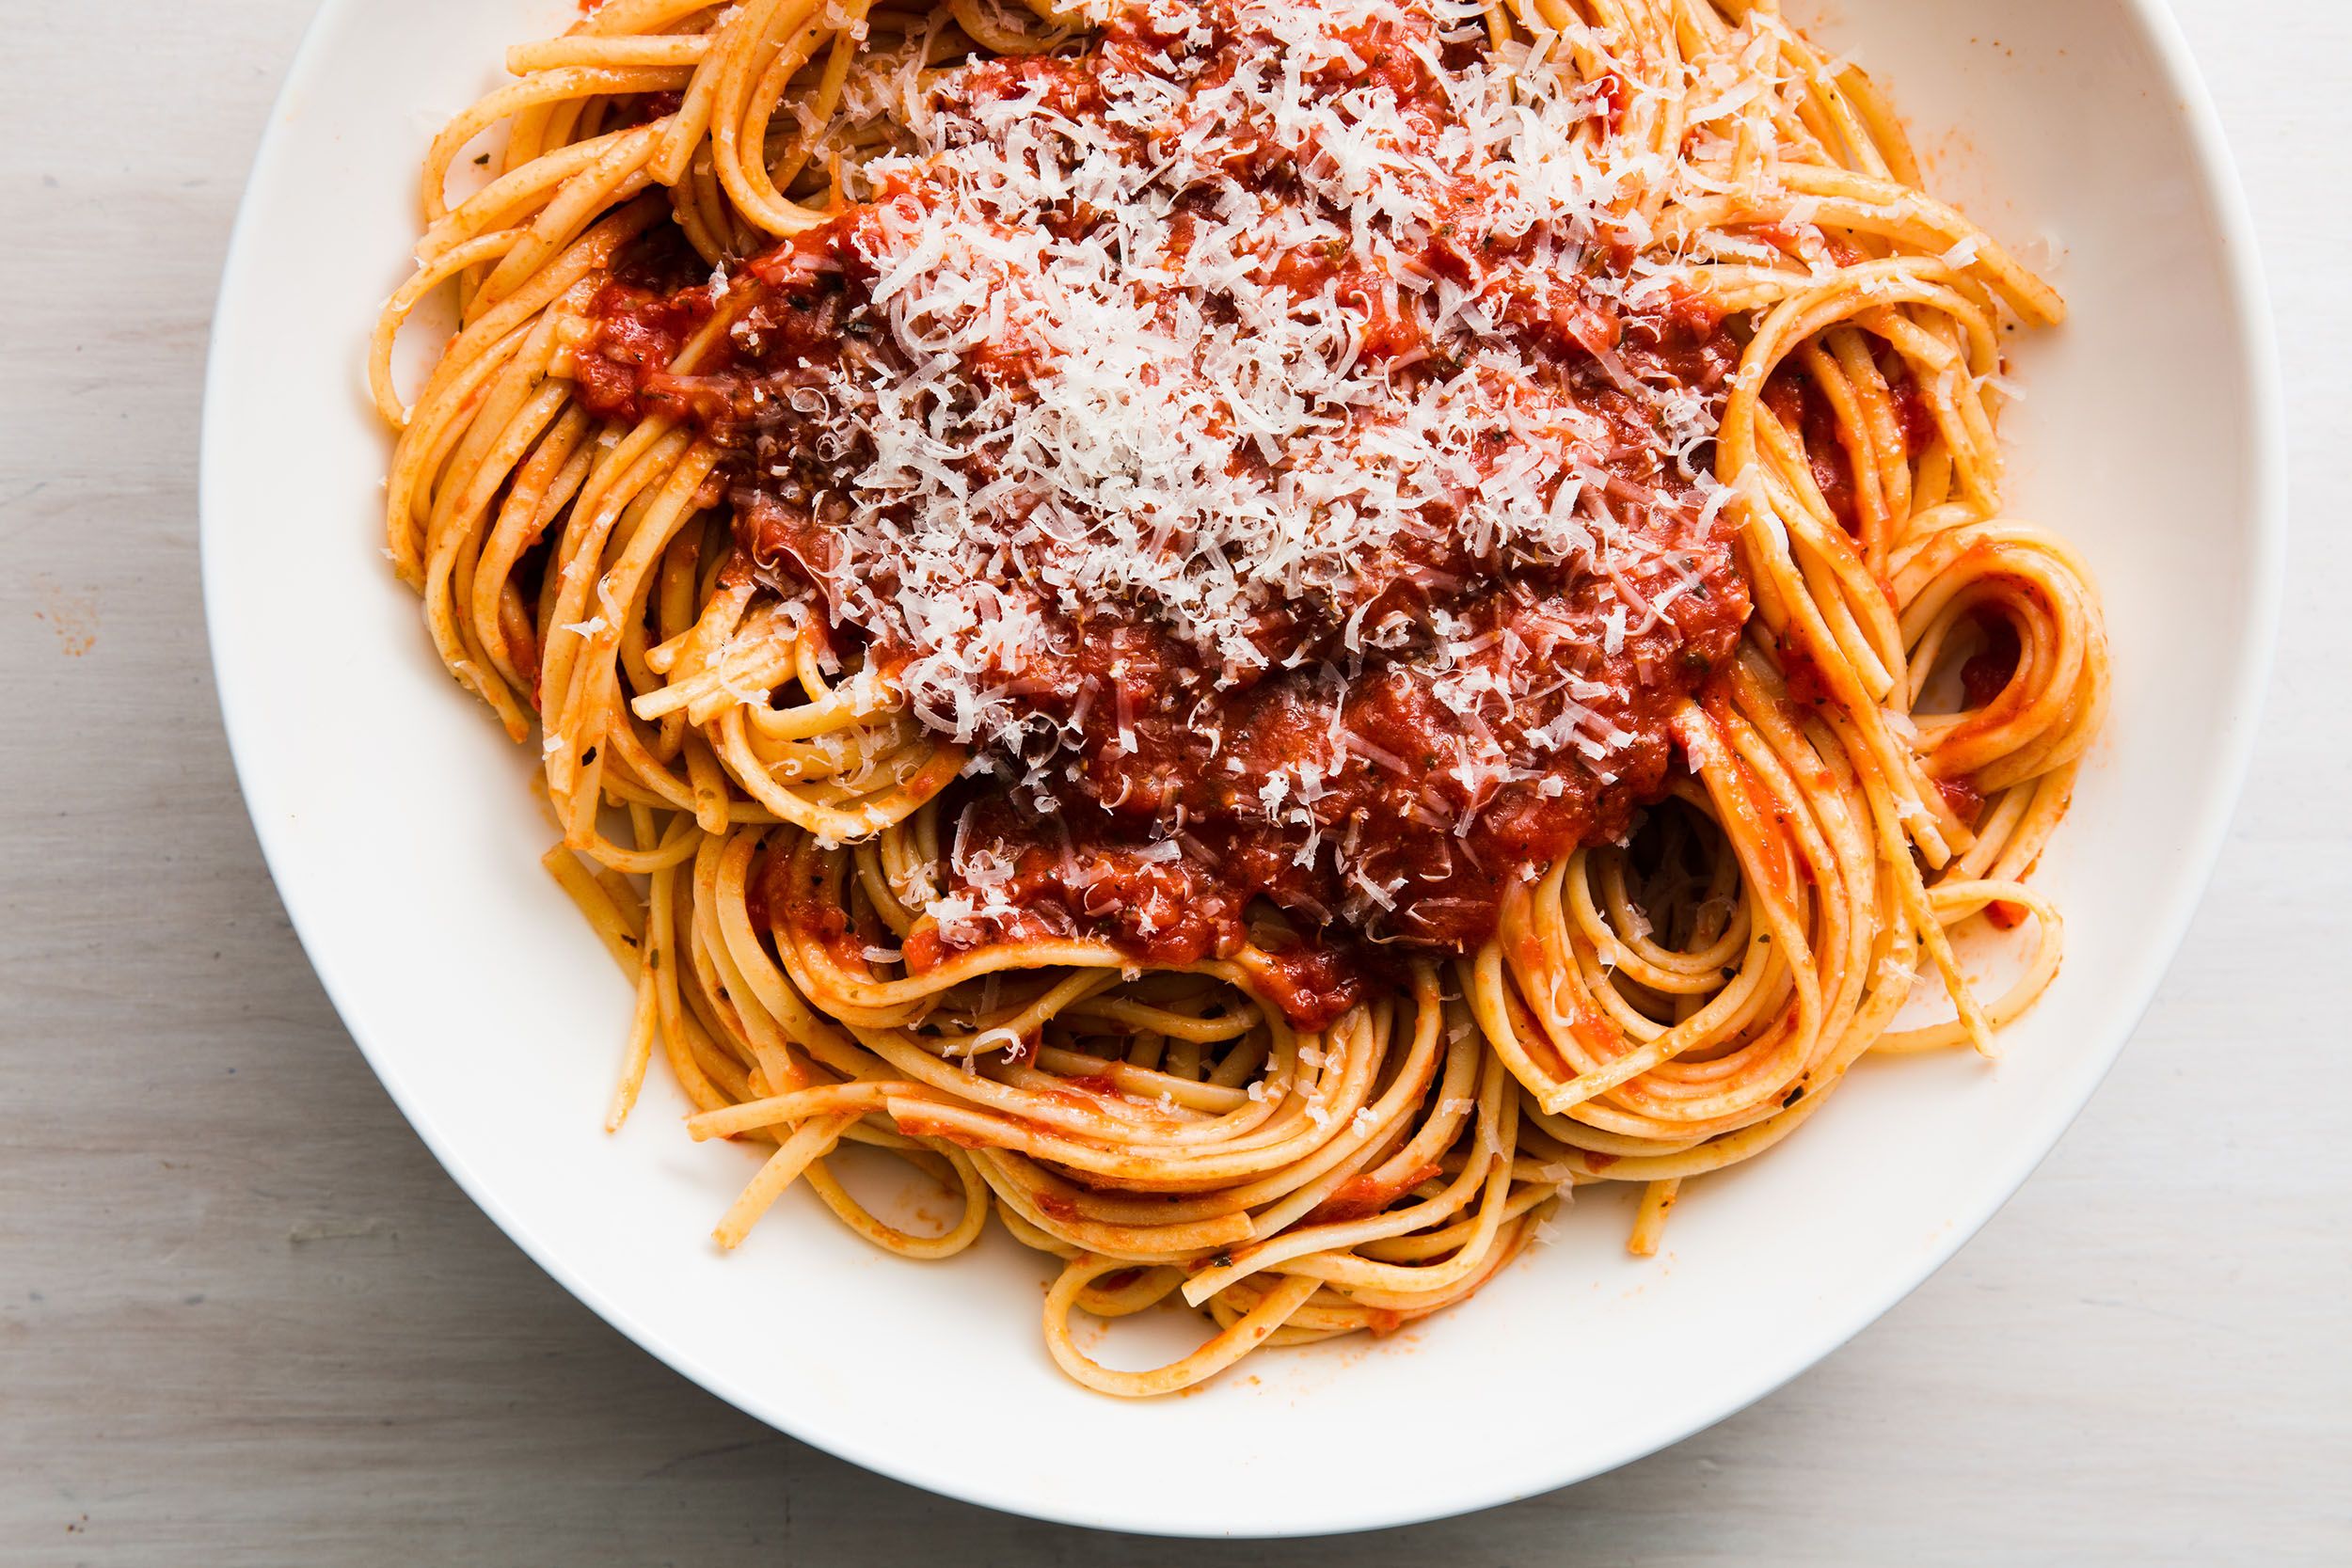 spaghetti.jpg